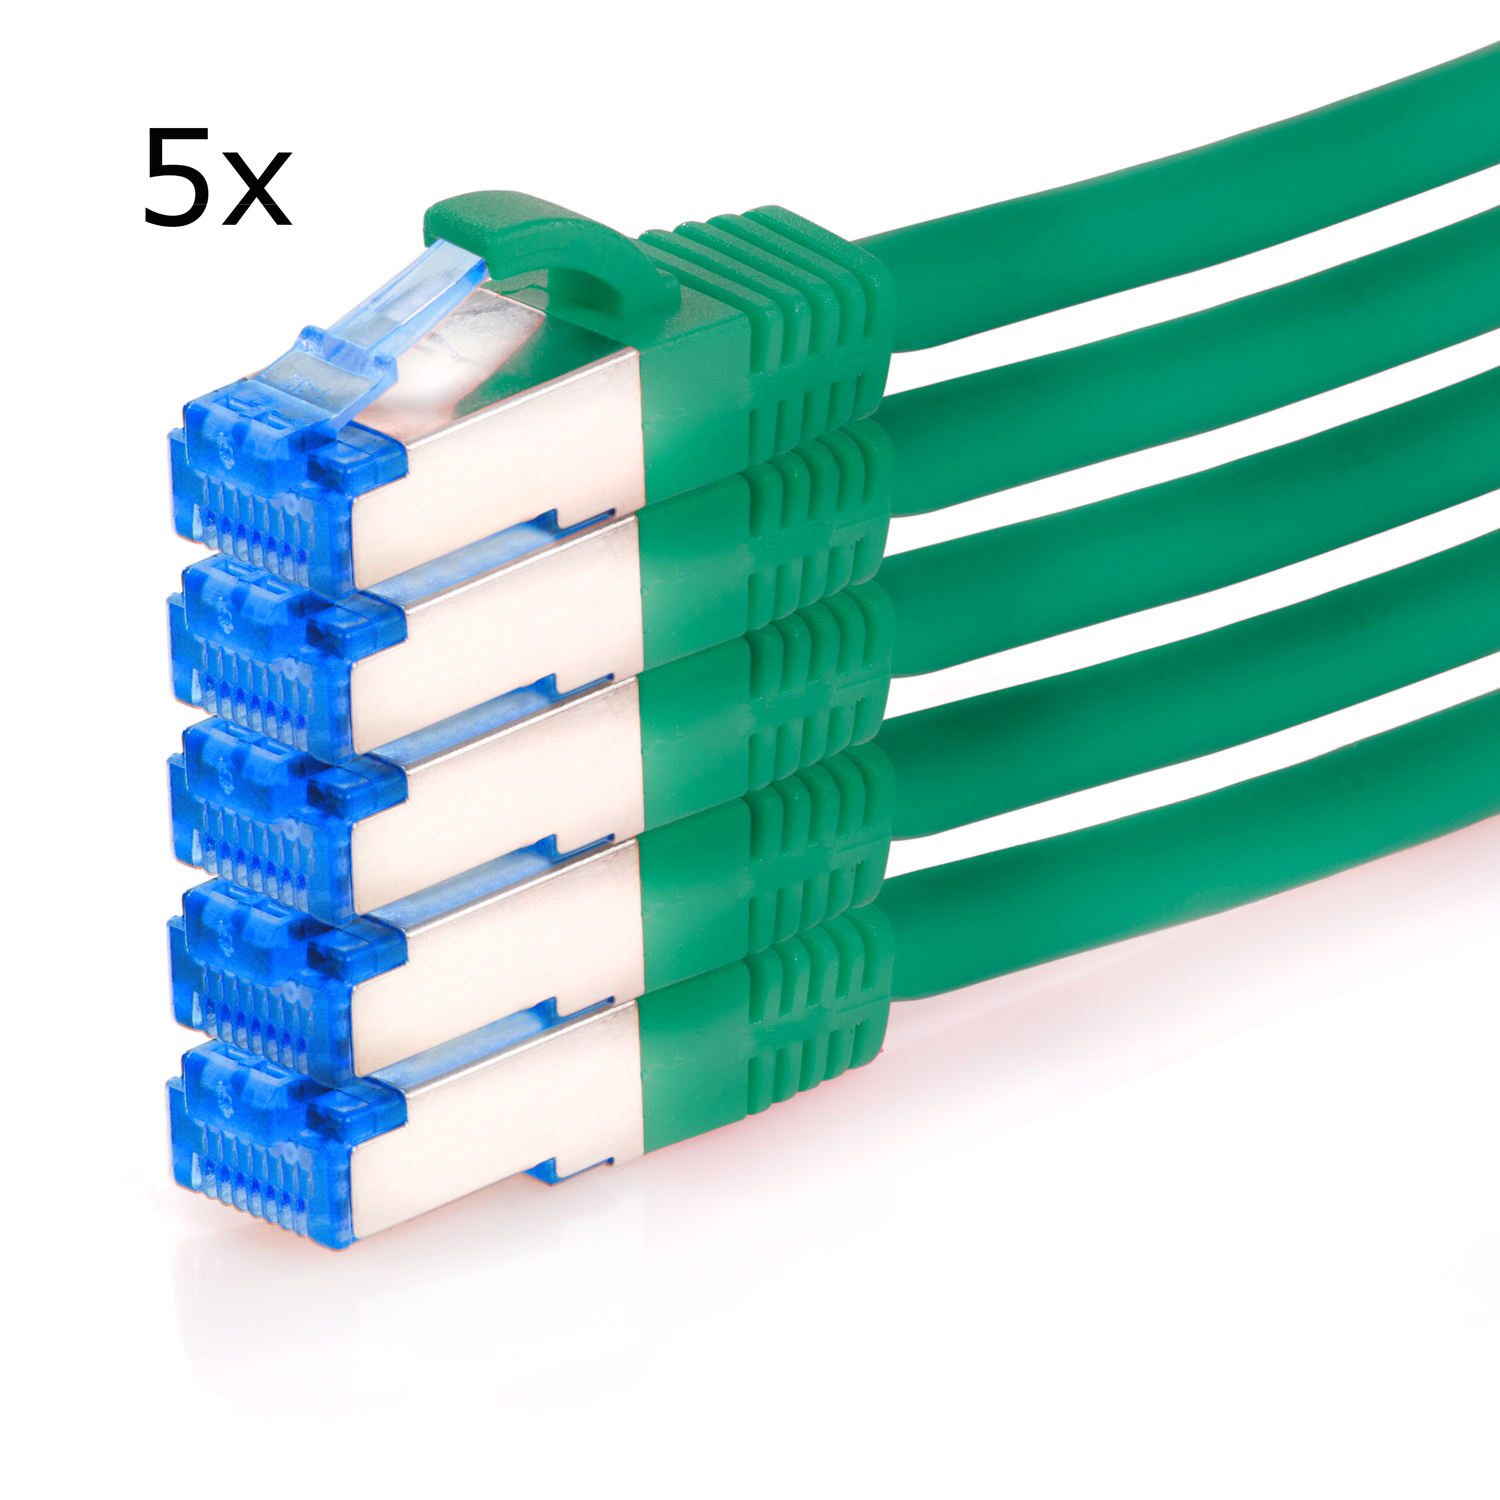 Netzwerkkabel 2 5er / Patchkabel 10GBit, S/FTP Pack Netzwerkkabel, TPFNET 2m grün, m